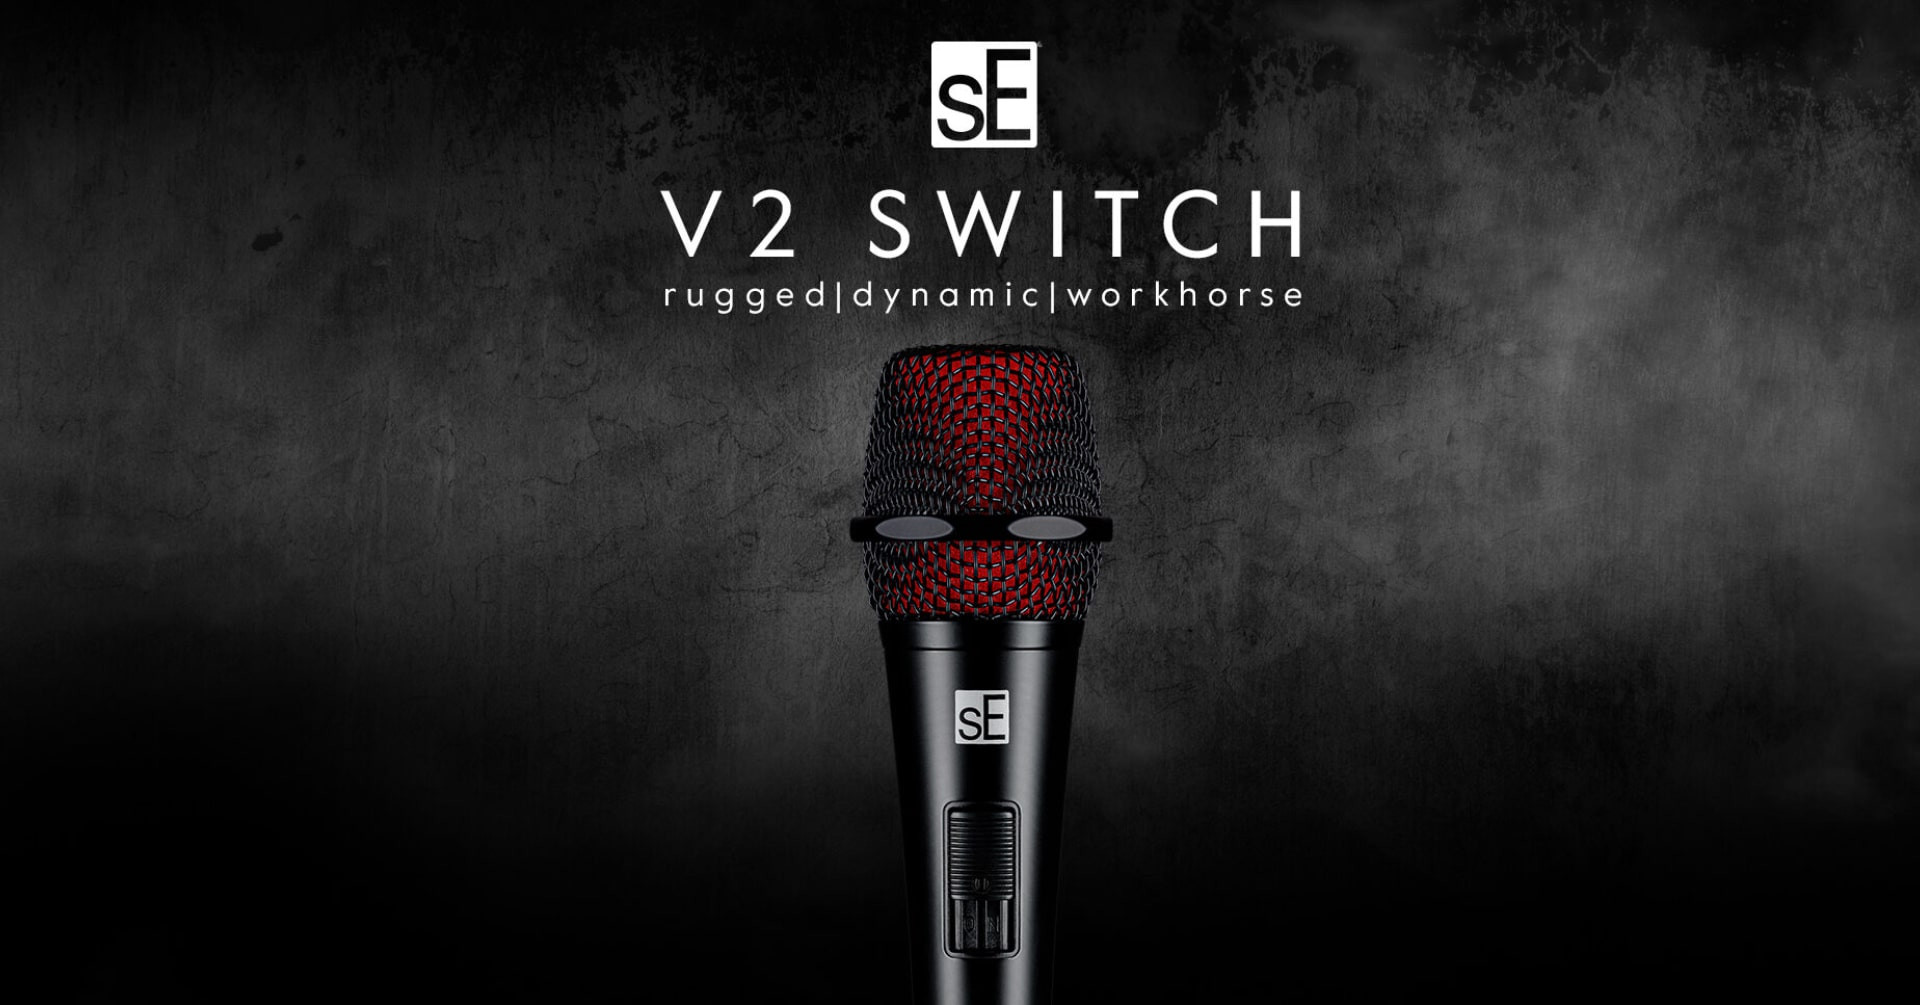 sE prezentuje nowy mikrofon dynamiczny V2 Switch